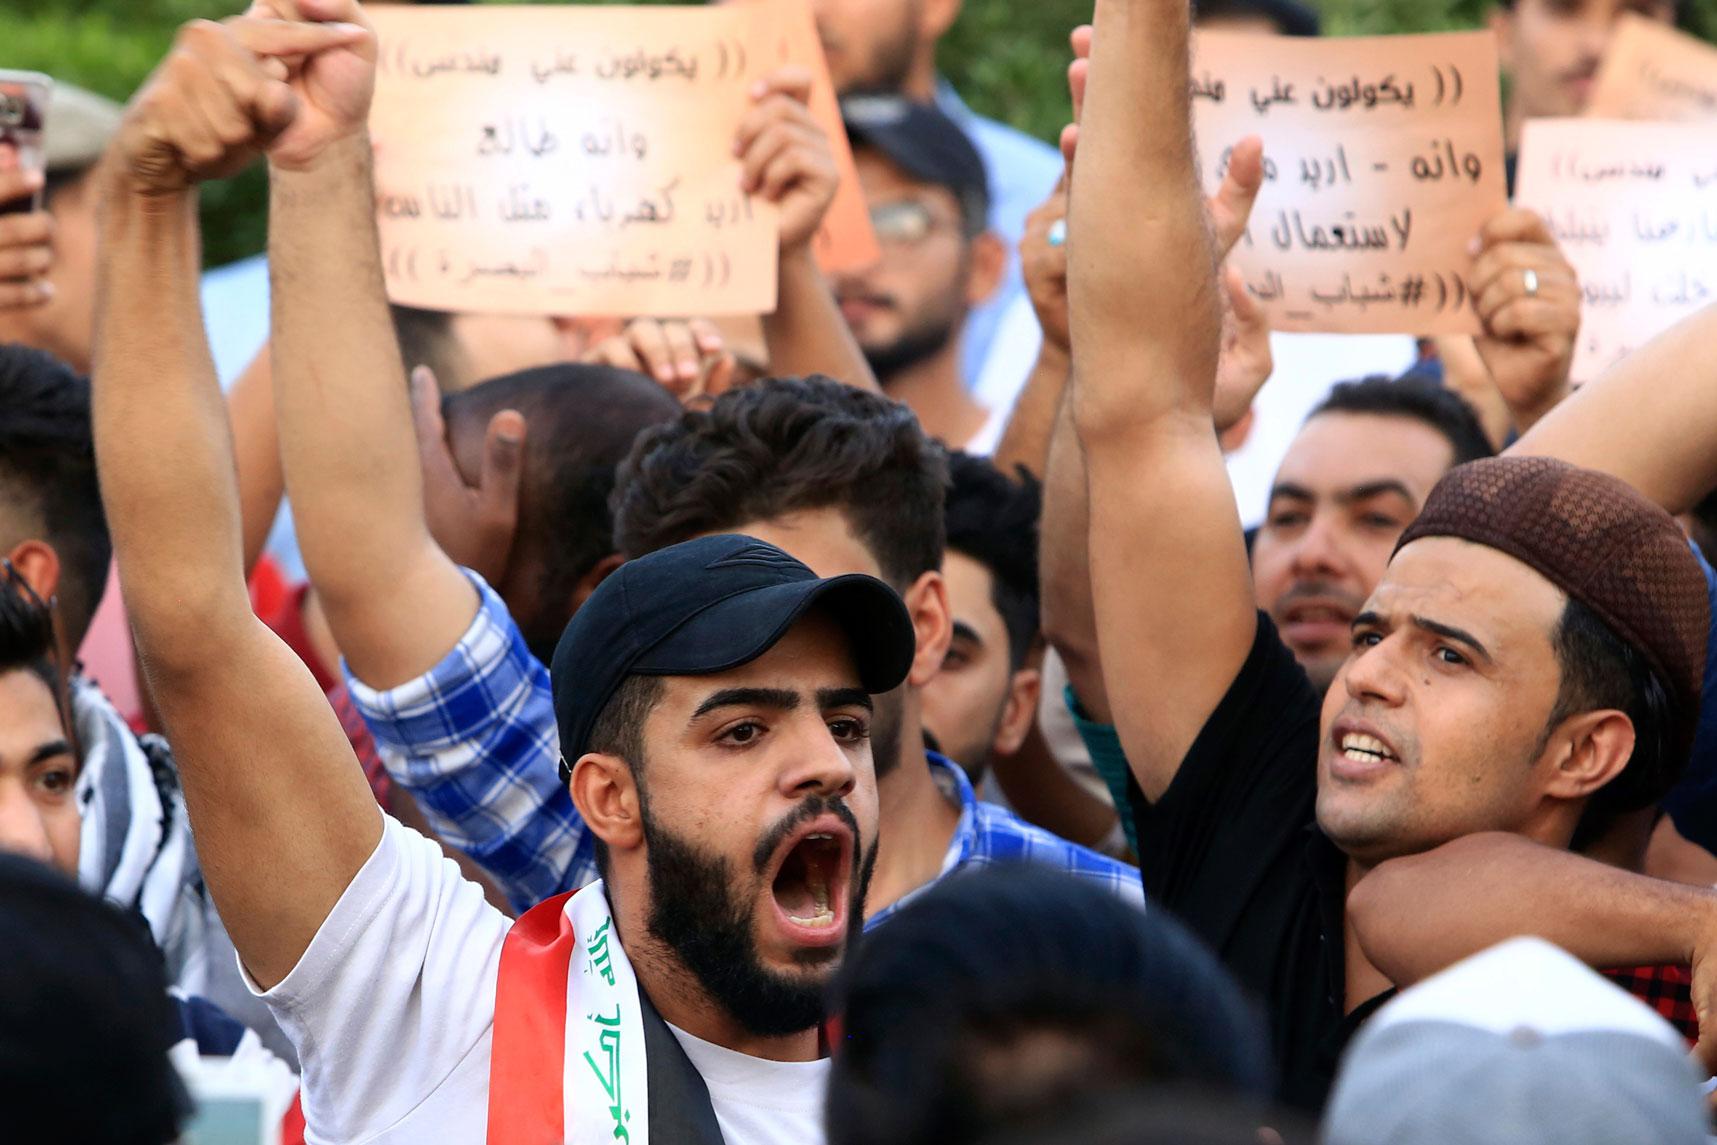 المظاهرات في العراق لا تهدأ رغم وعود قطعتها الحكومة